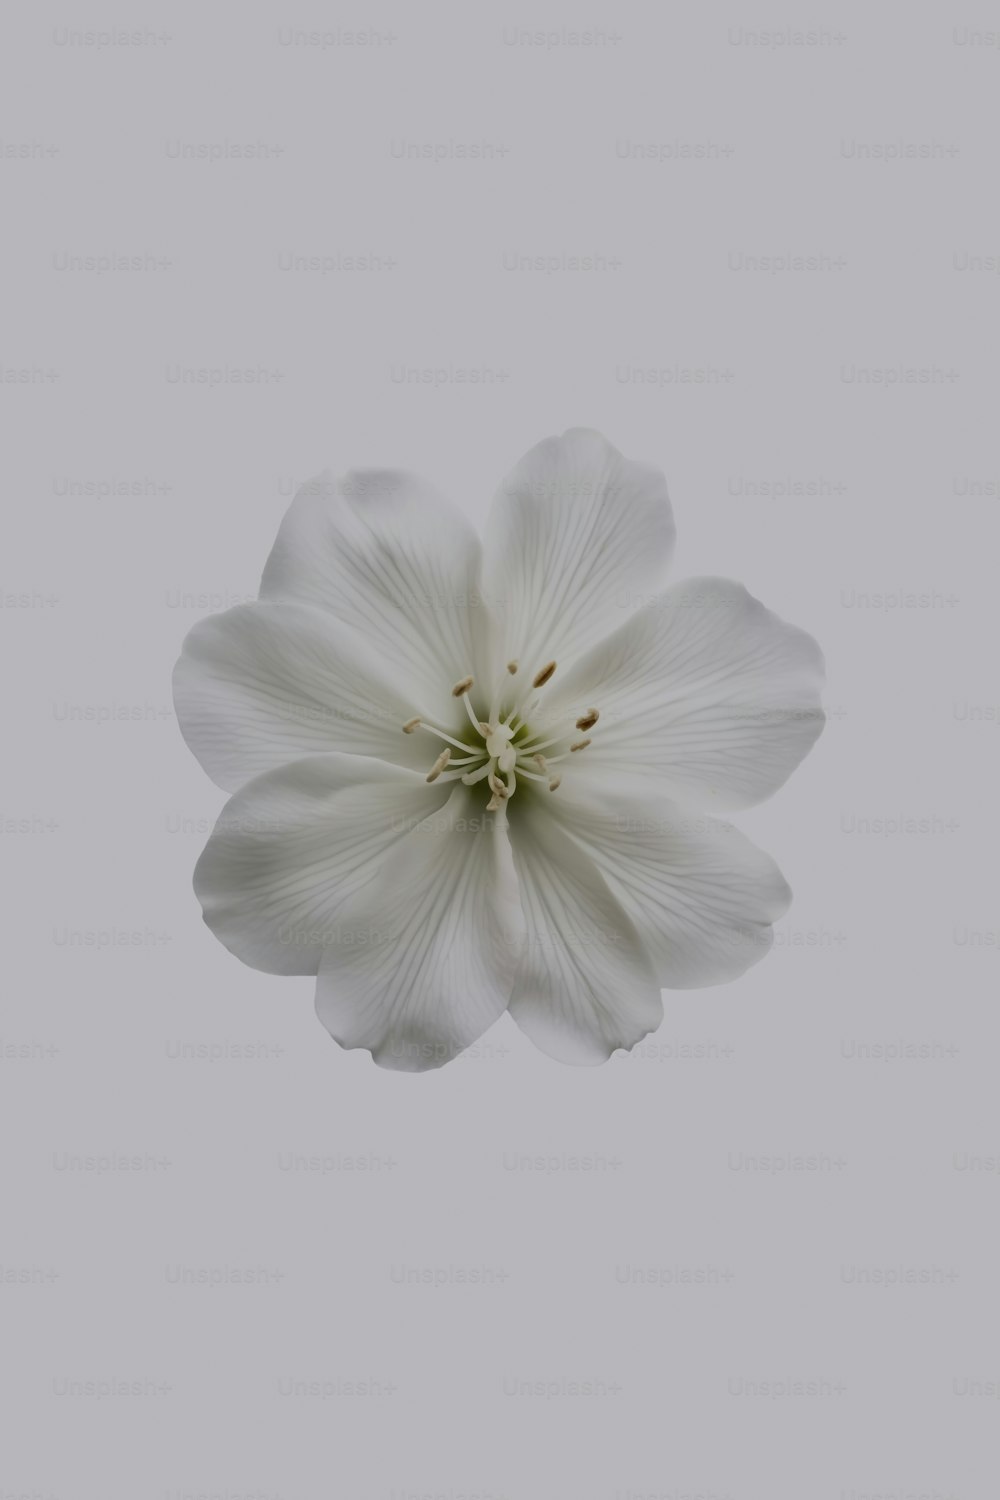 Une fleur blanche est au milieu d’un ciel gris